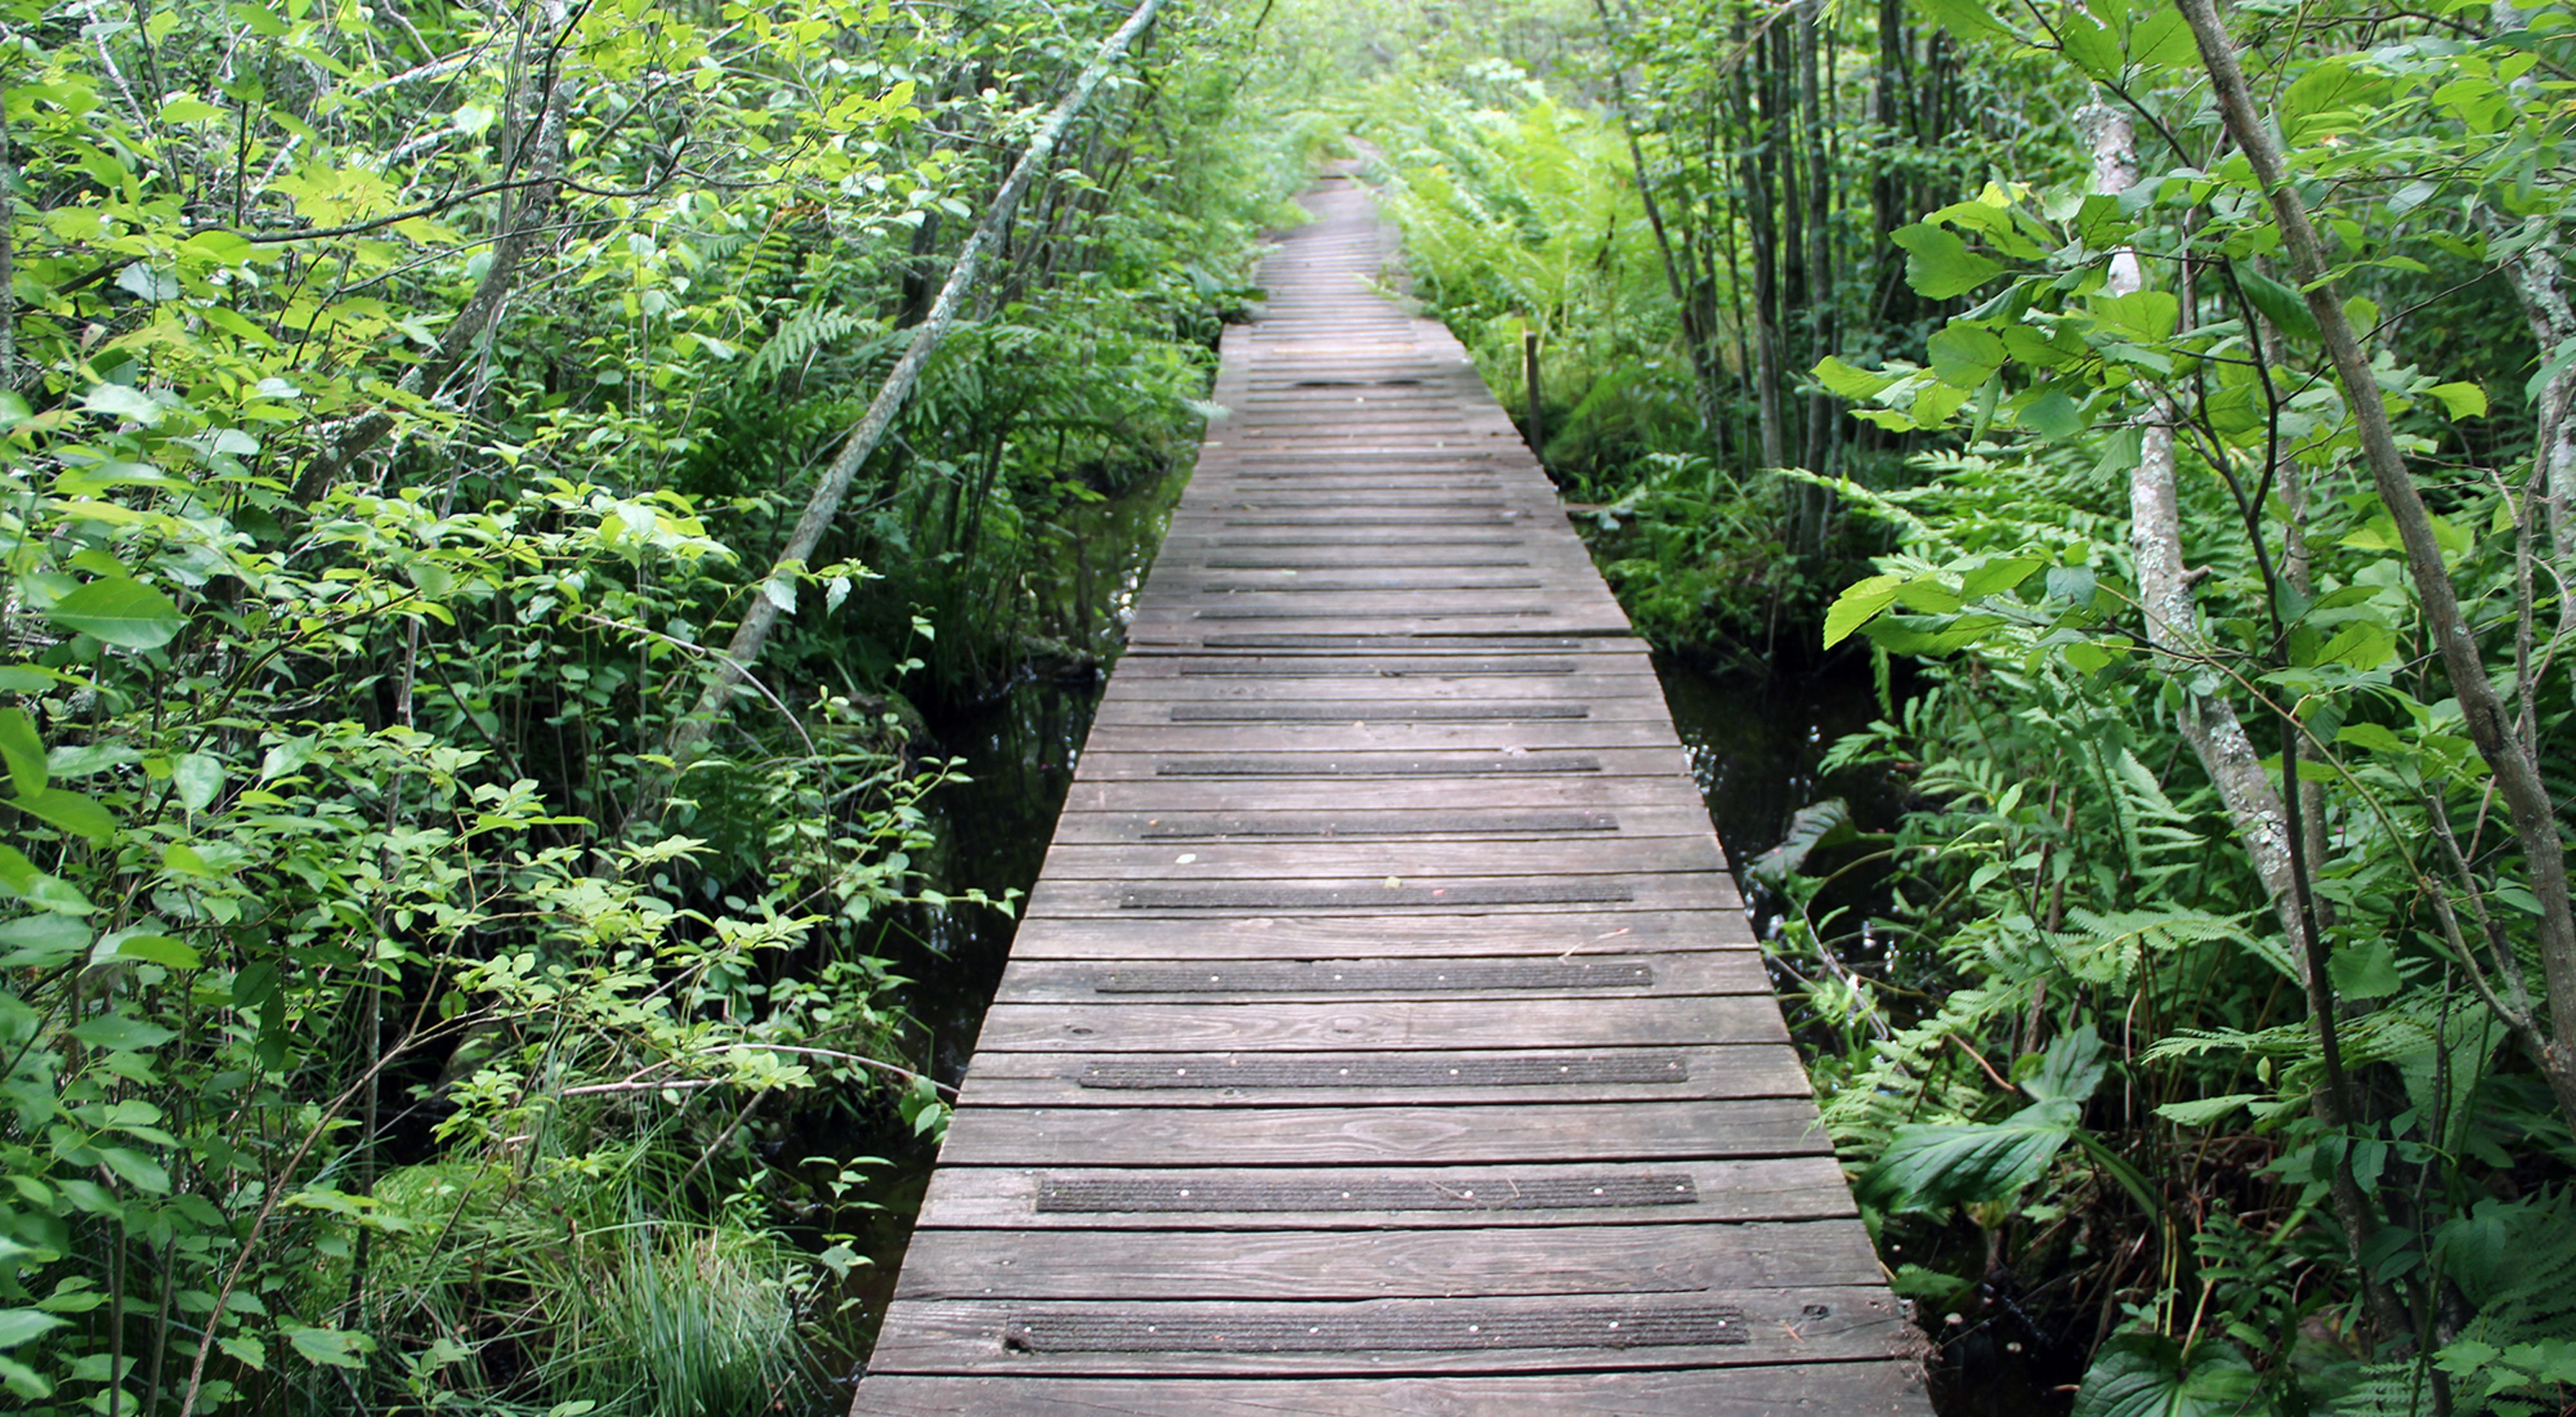 A wooden boardwalk runs through a lush green forest. 